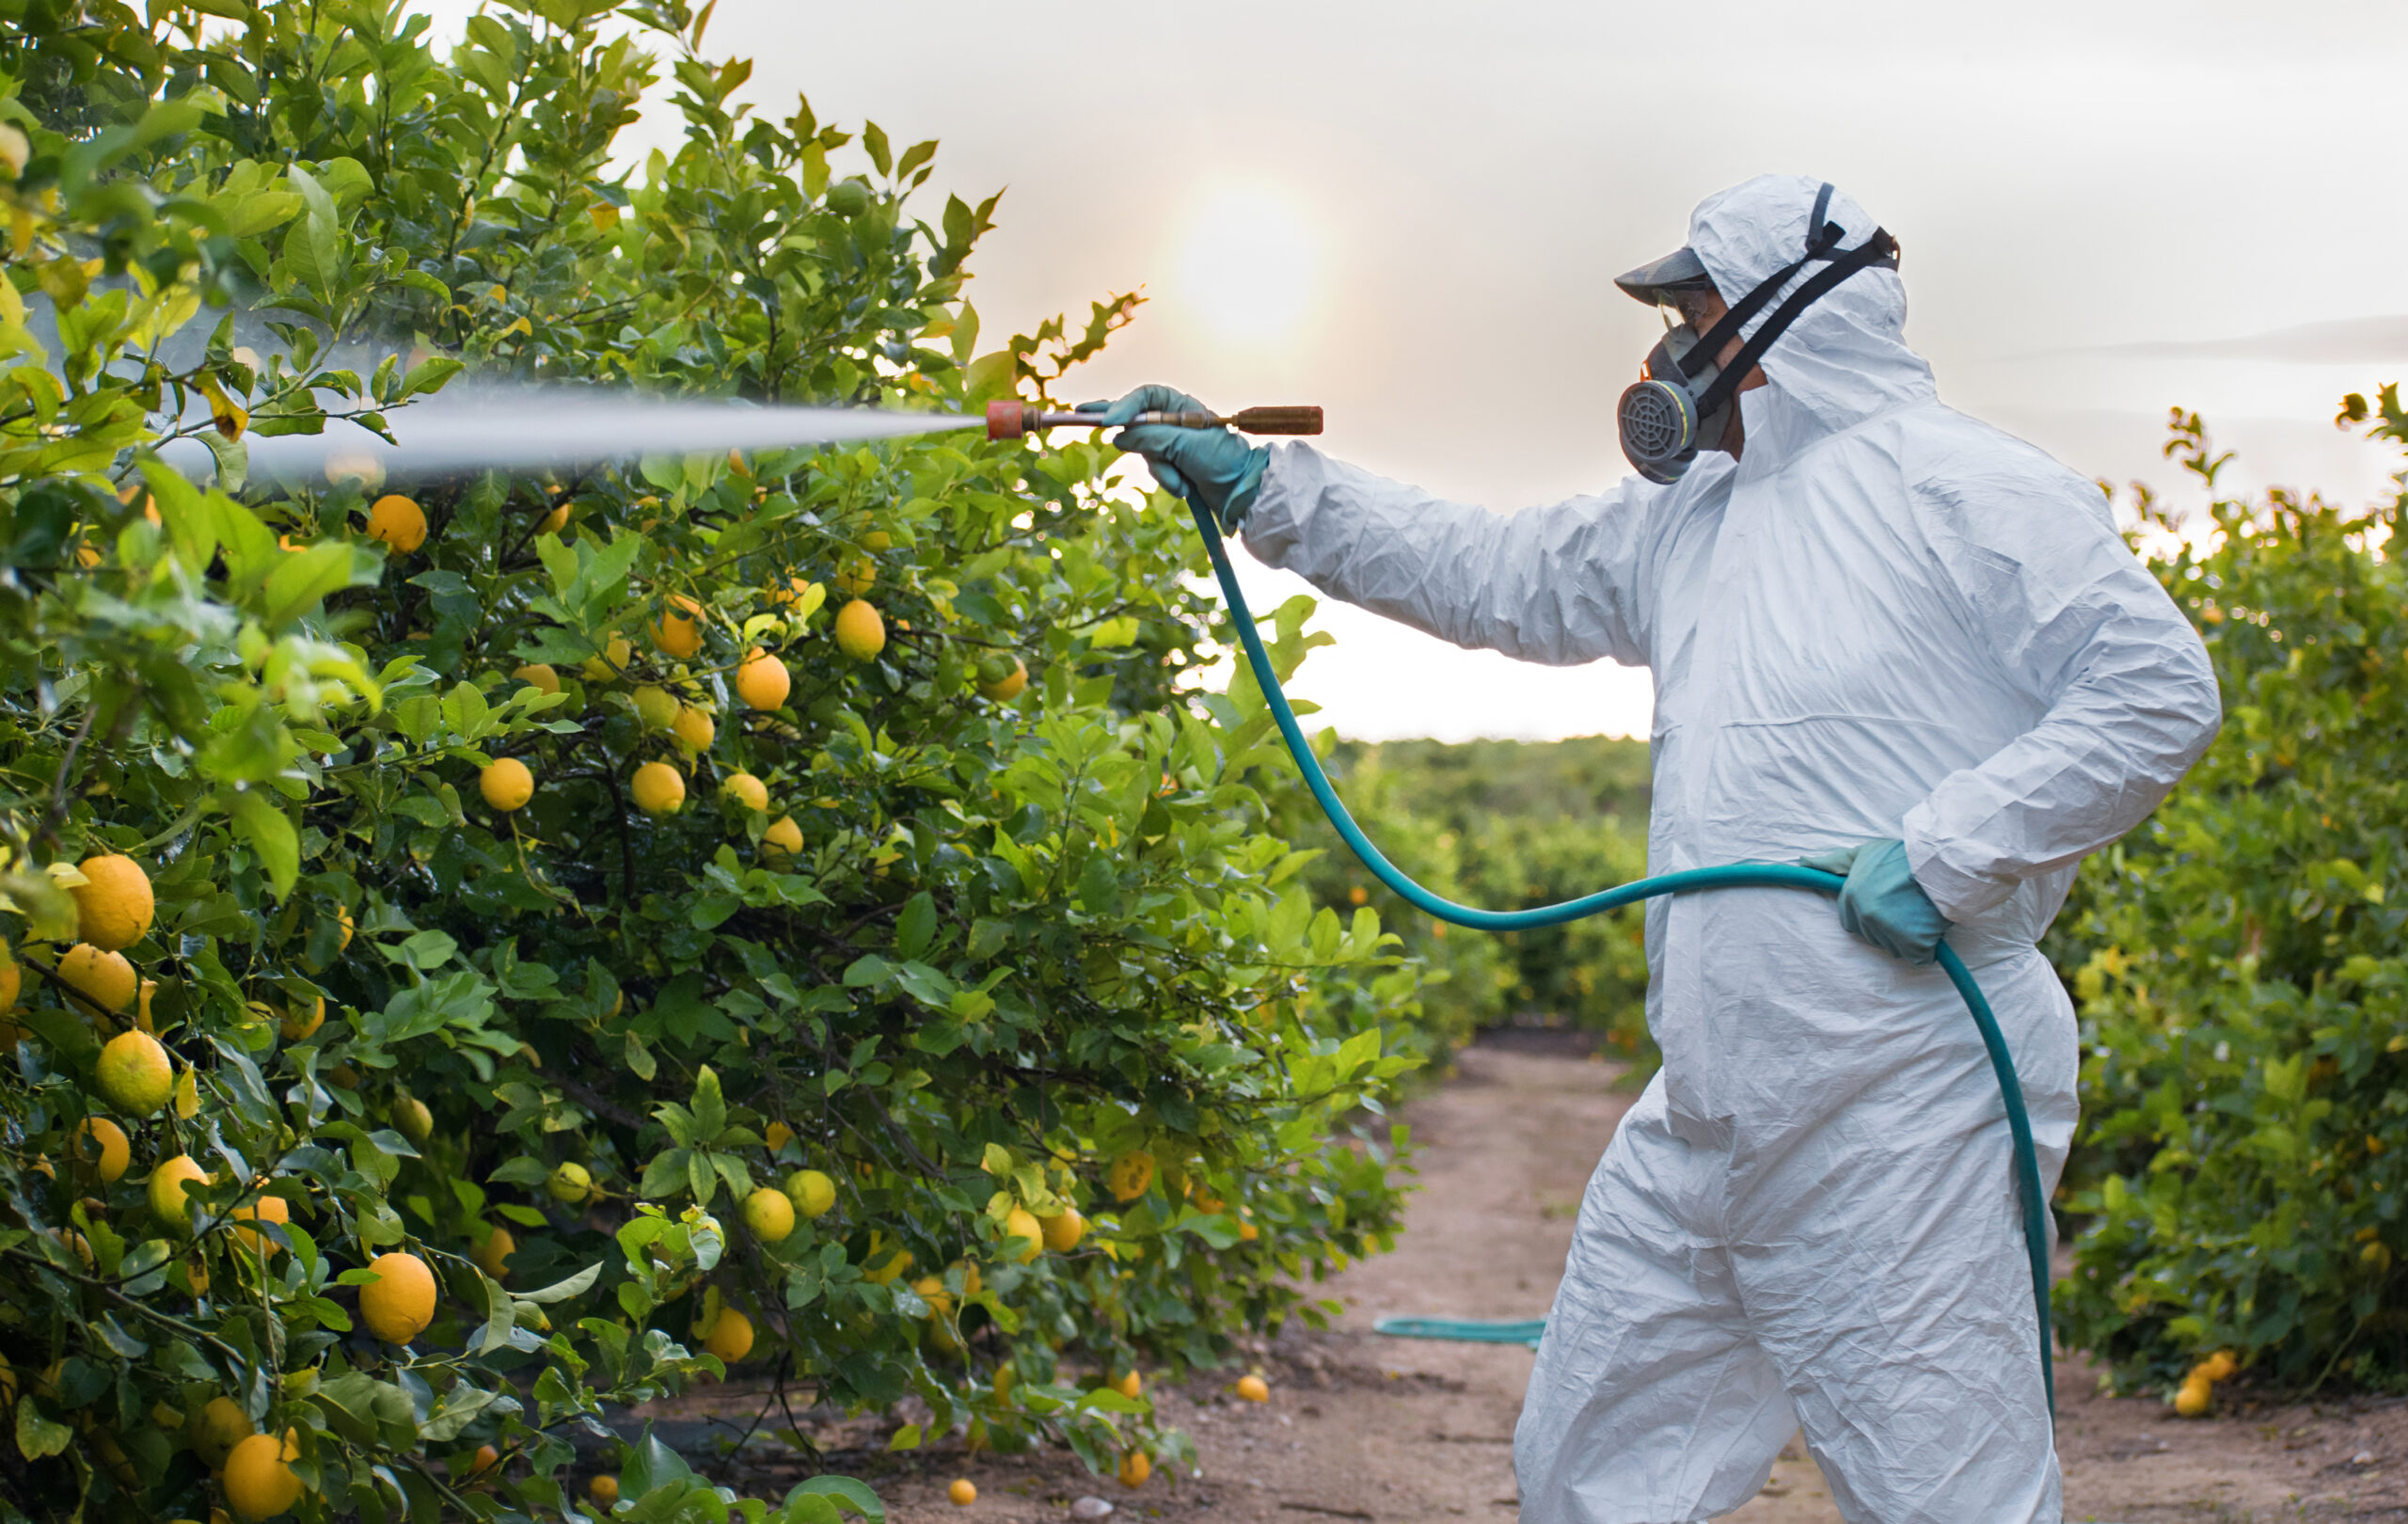 Il monito di Legambiente: necessario un taglio sull'utilizzo di pesticidi nelle coltivazioni